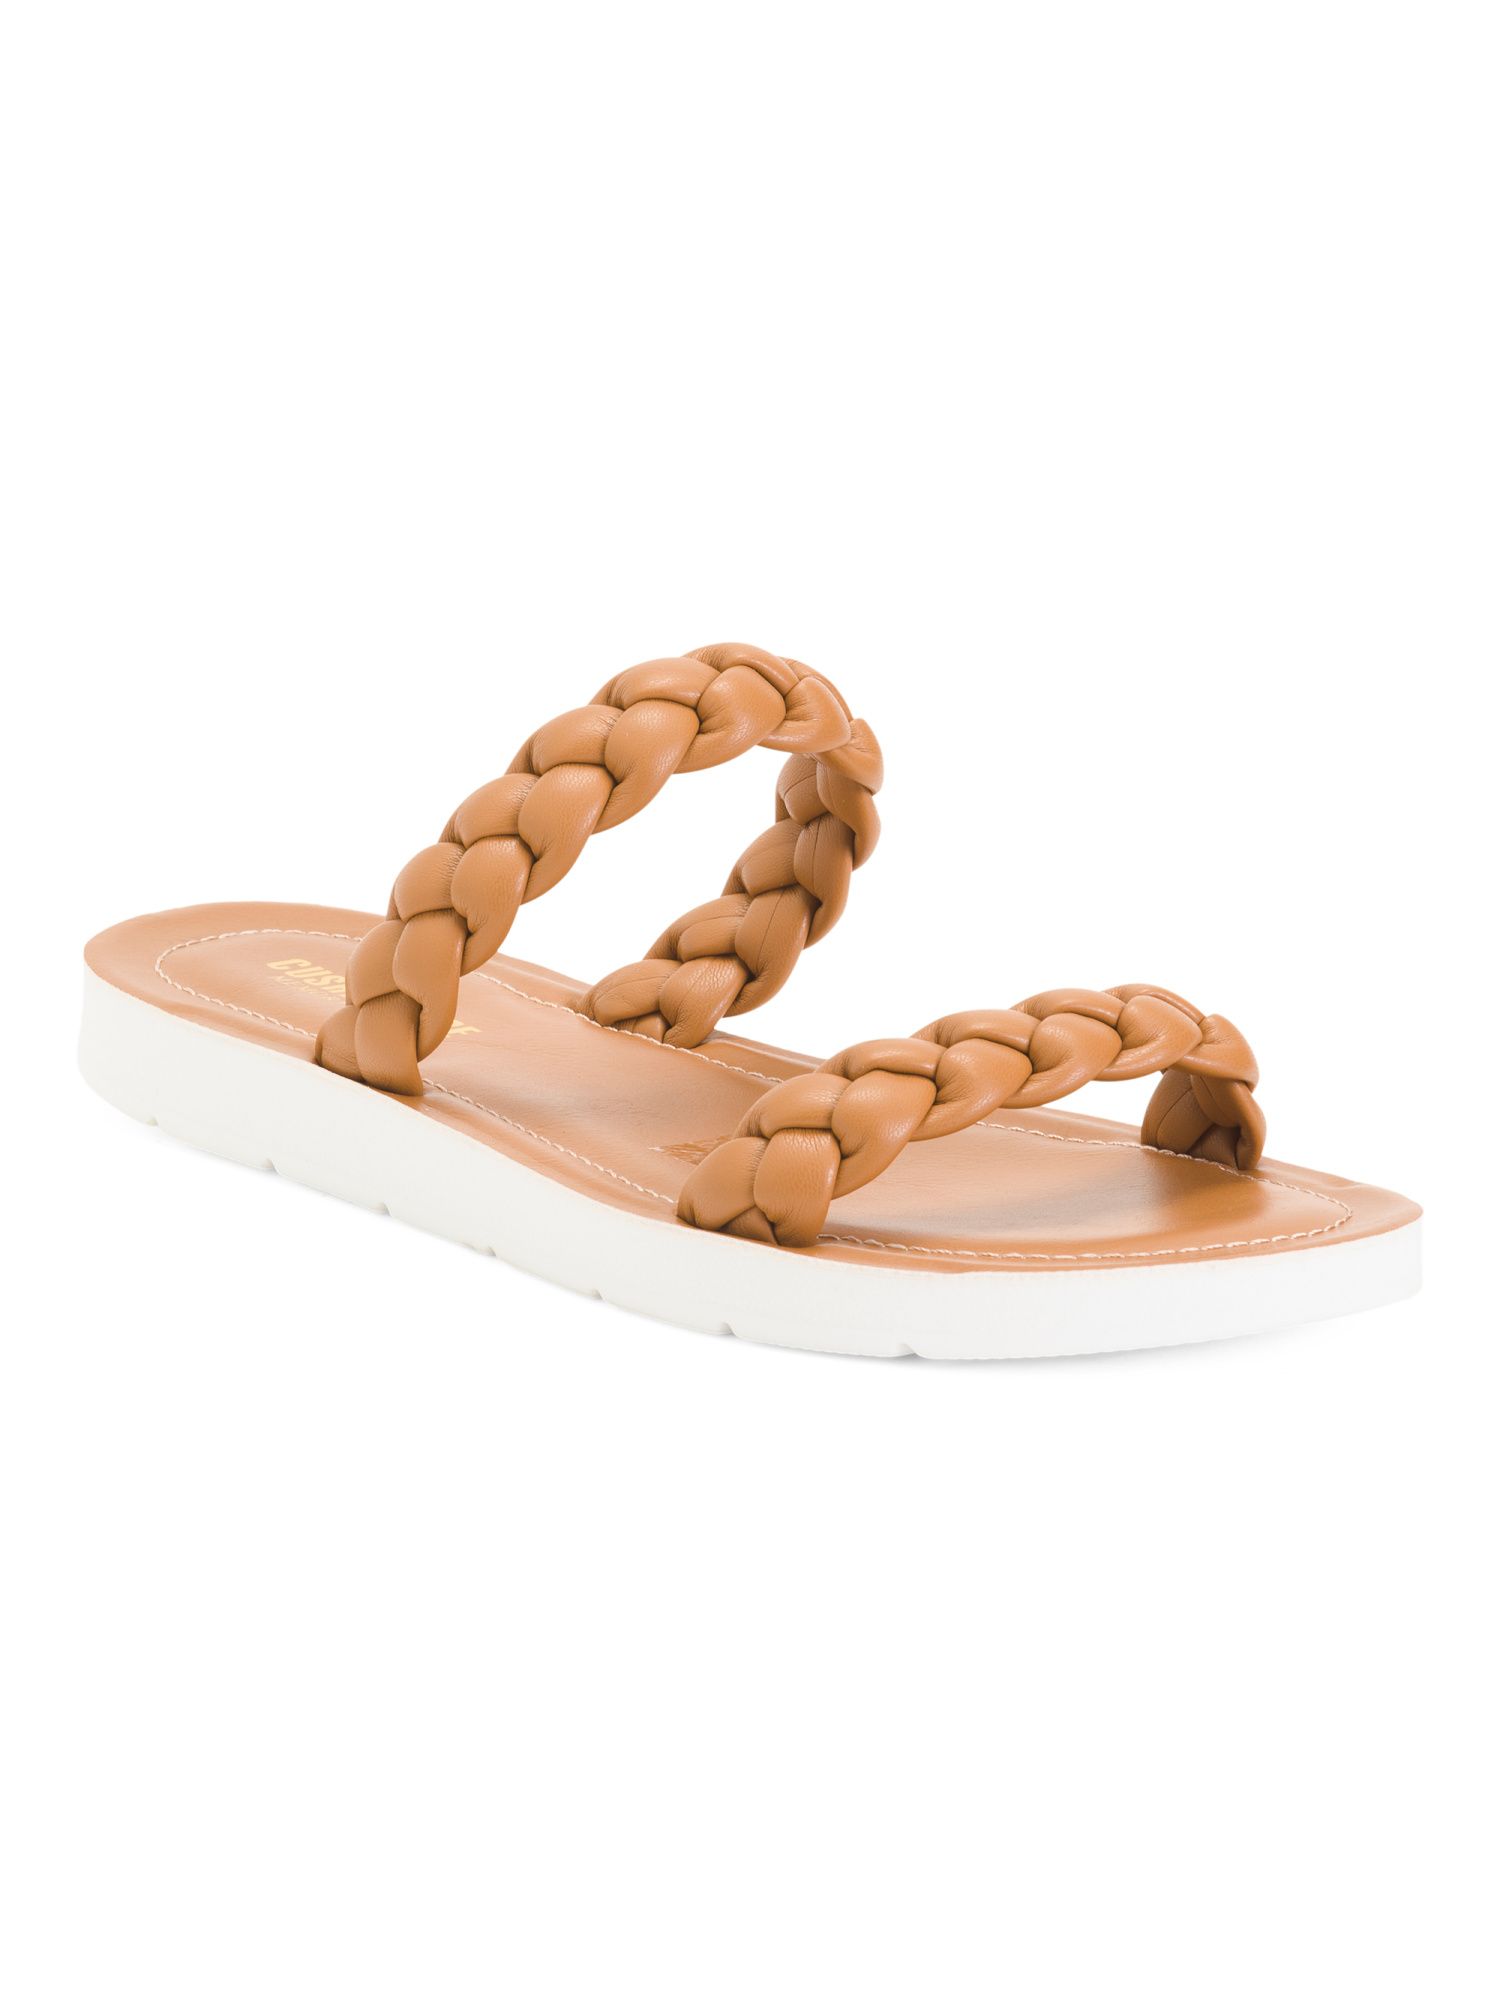 Braided Flat Sandals | TJ Maxx